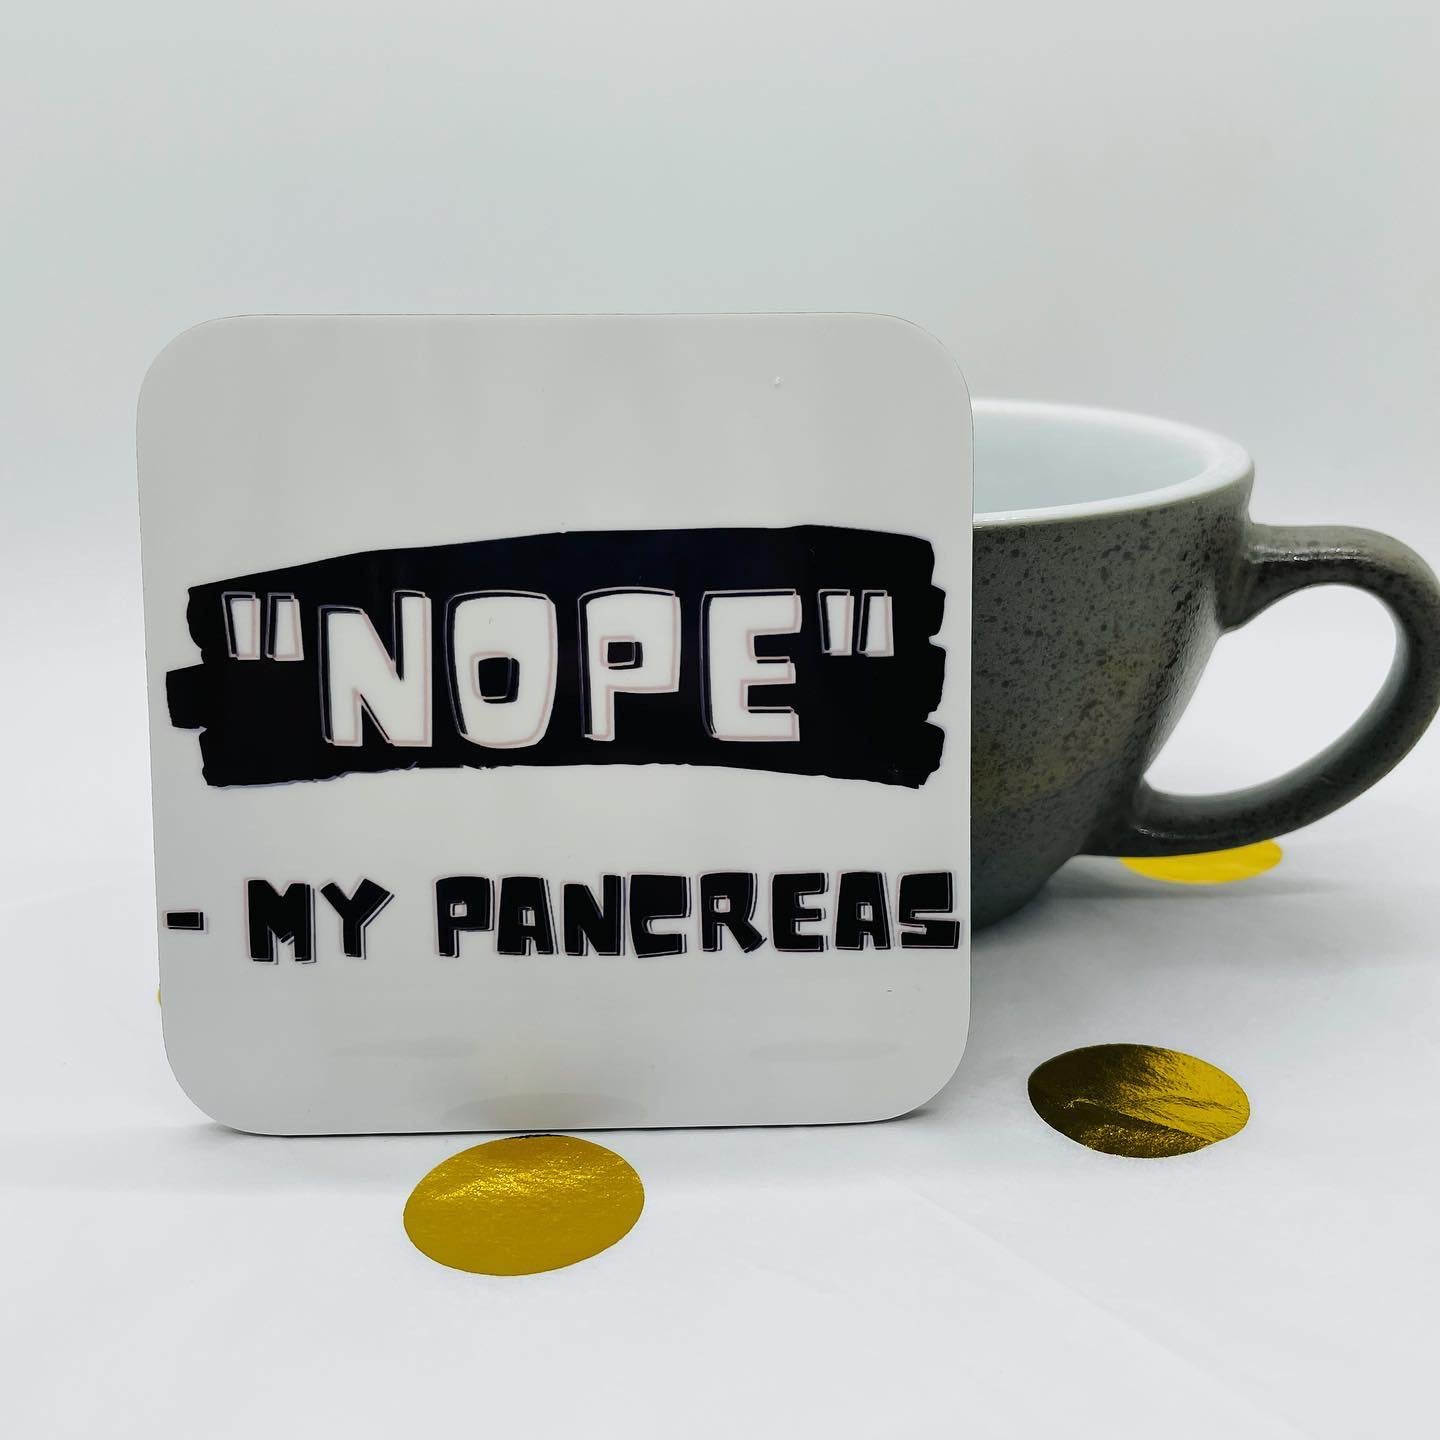 "Nope" - My Pancreas Coaster